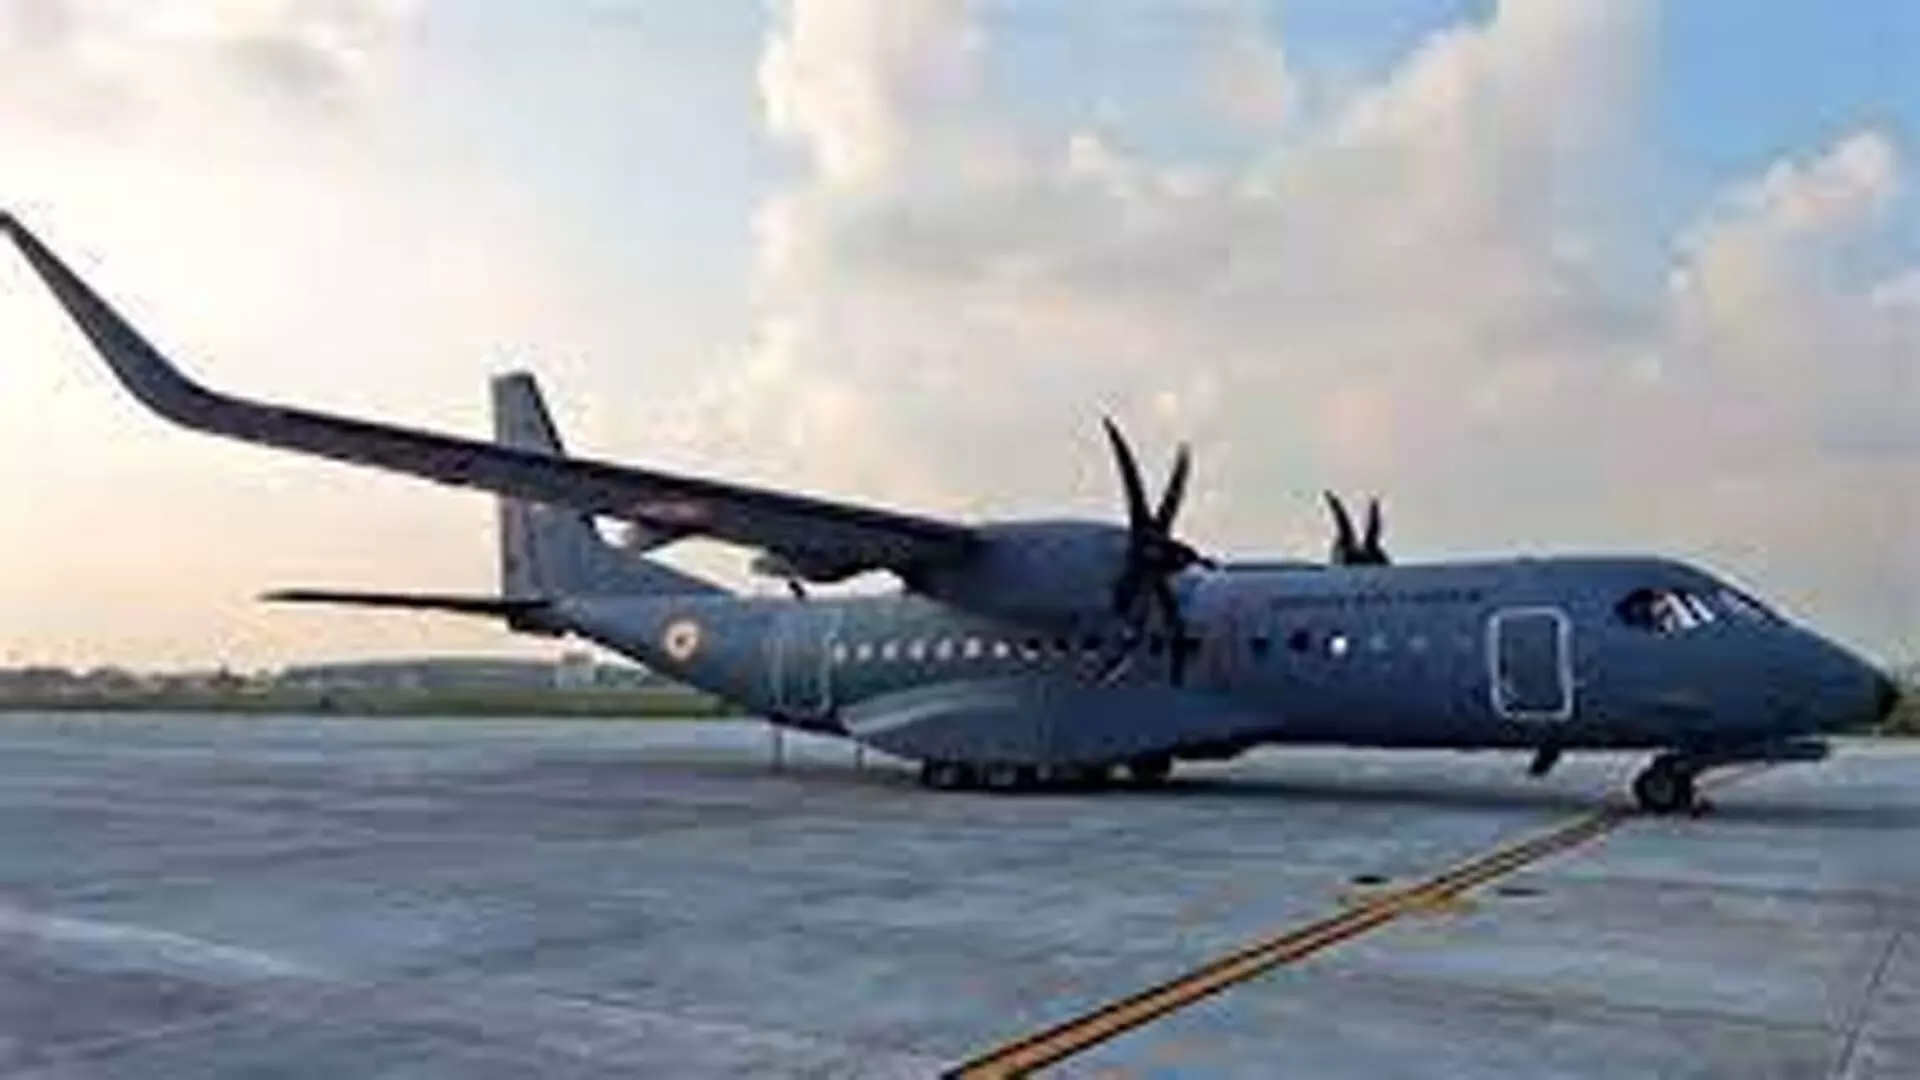 वायुसेना ने जम्मू और लद्दाख के बीच फंसे 700 से अधिक यात्रियों को एयरलिफ्ट किया